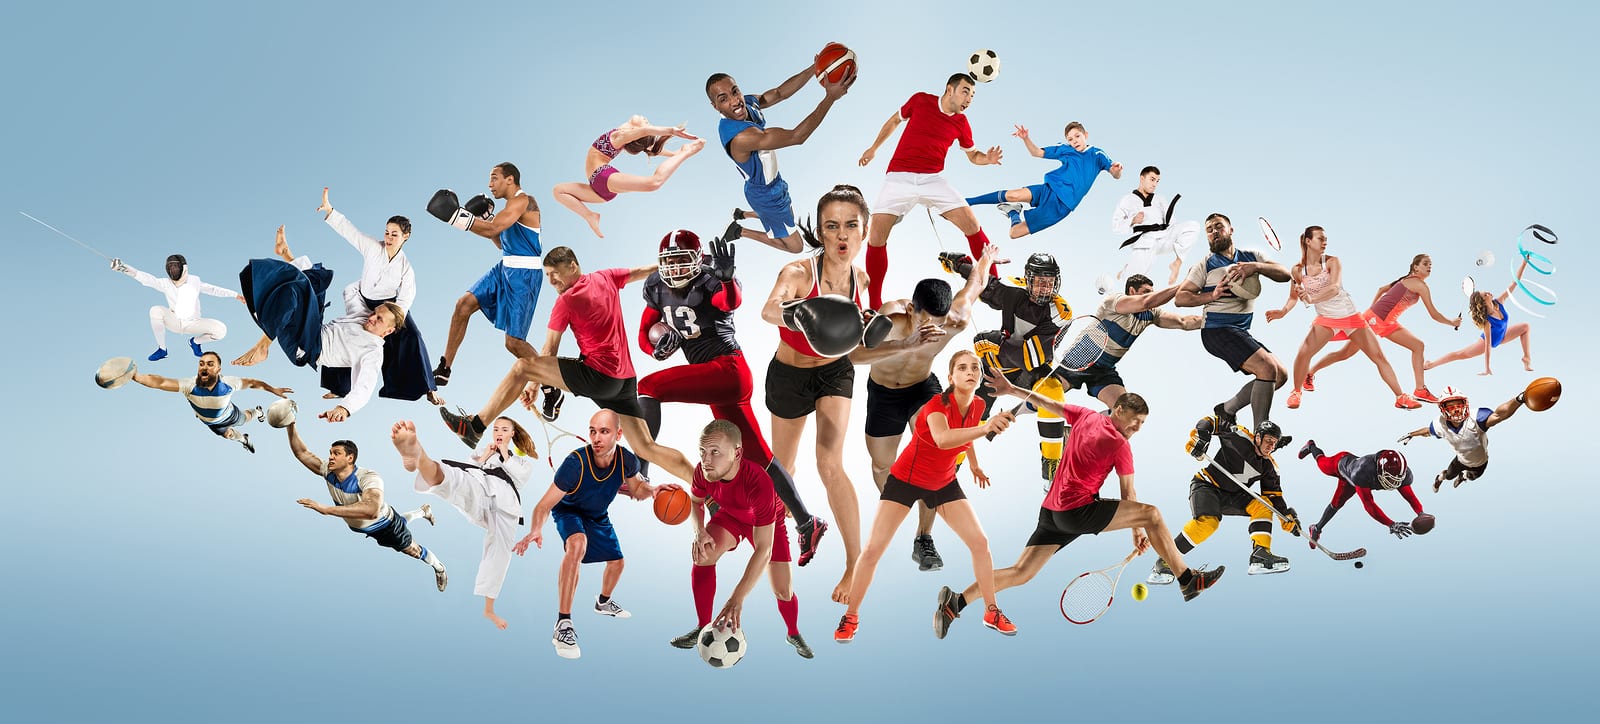 Какой вид спорта лучше всего подходит для ставок на спорт?